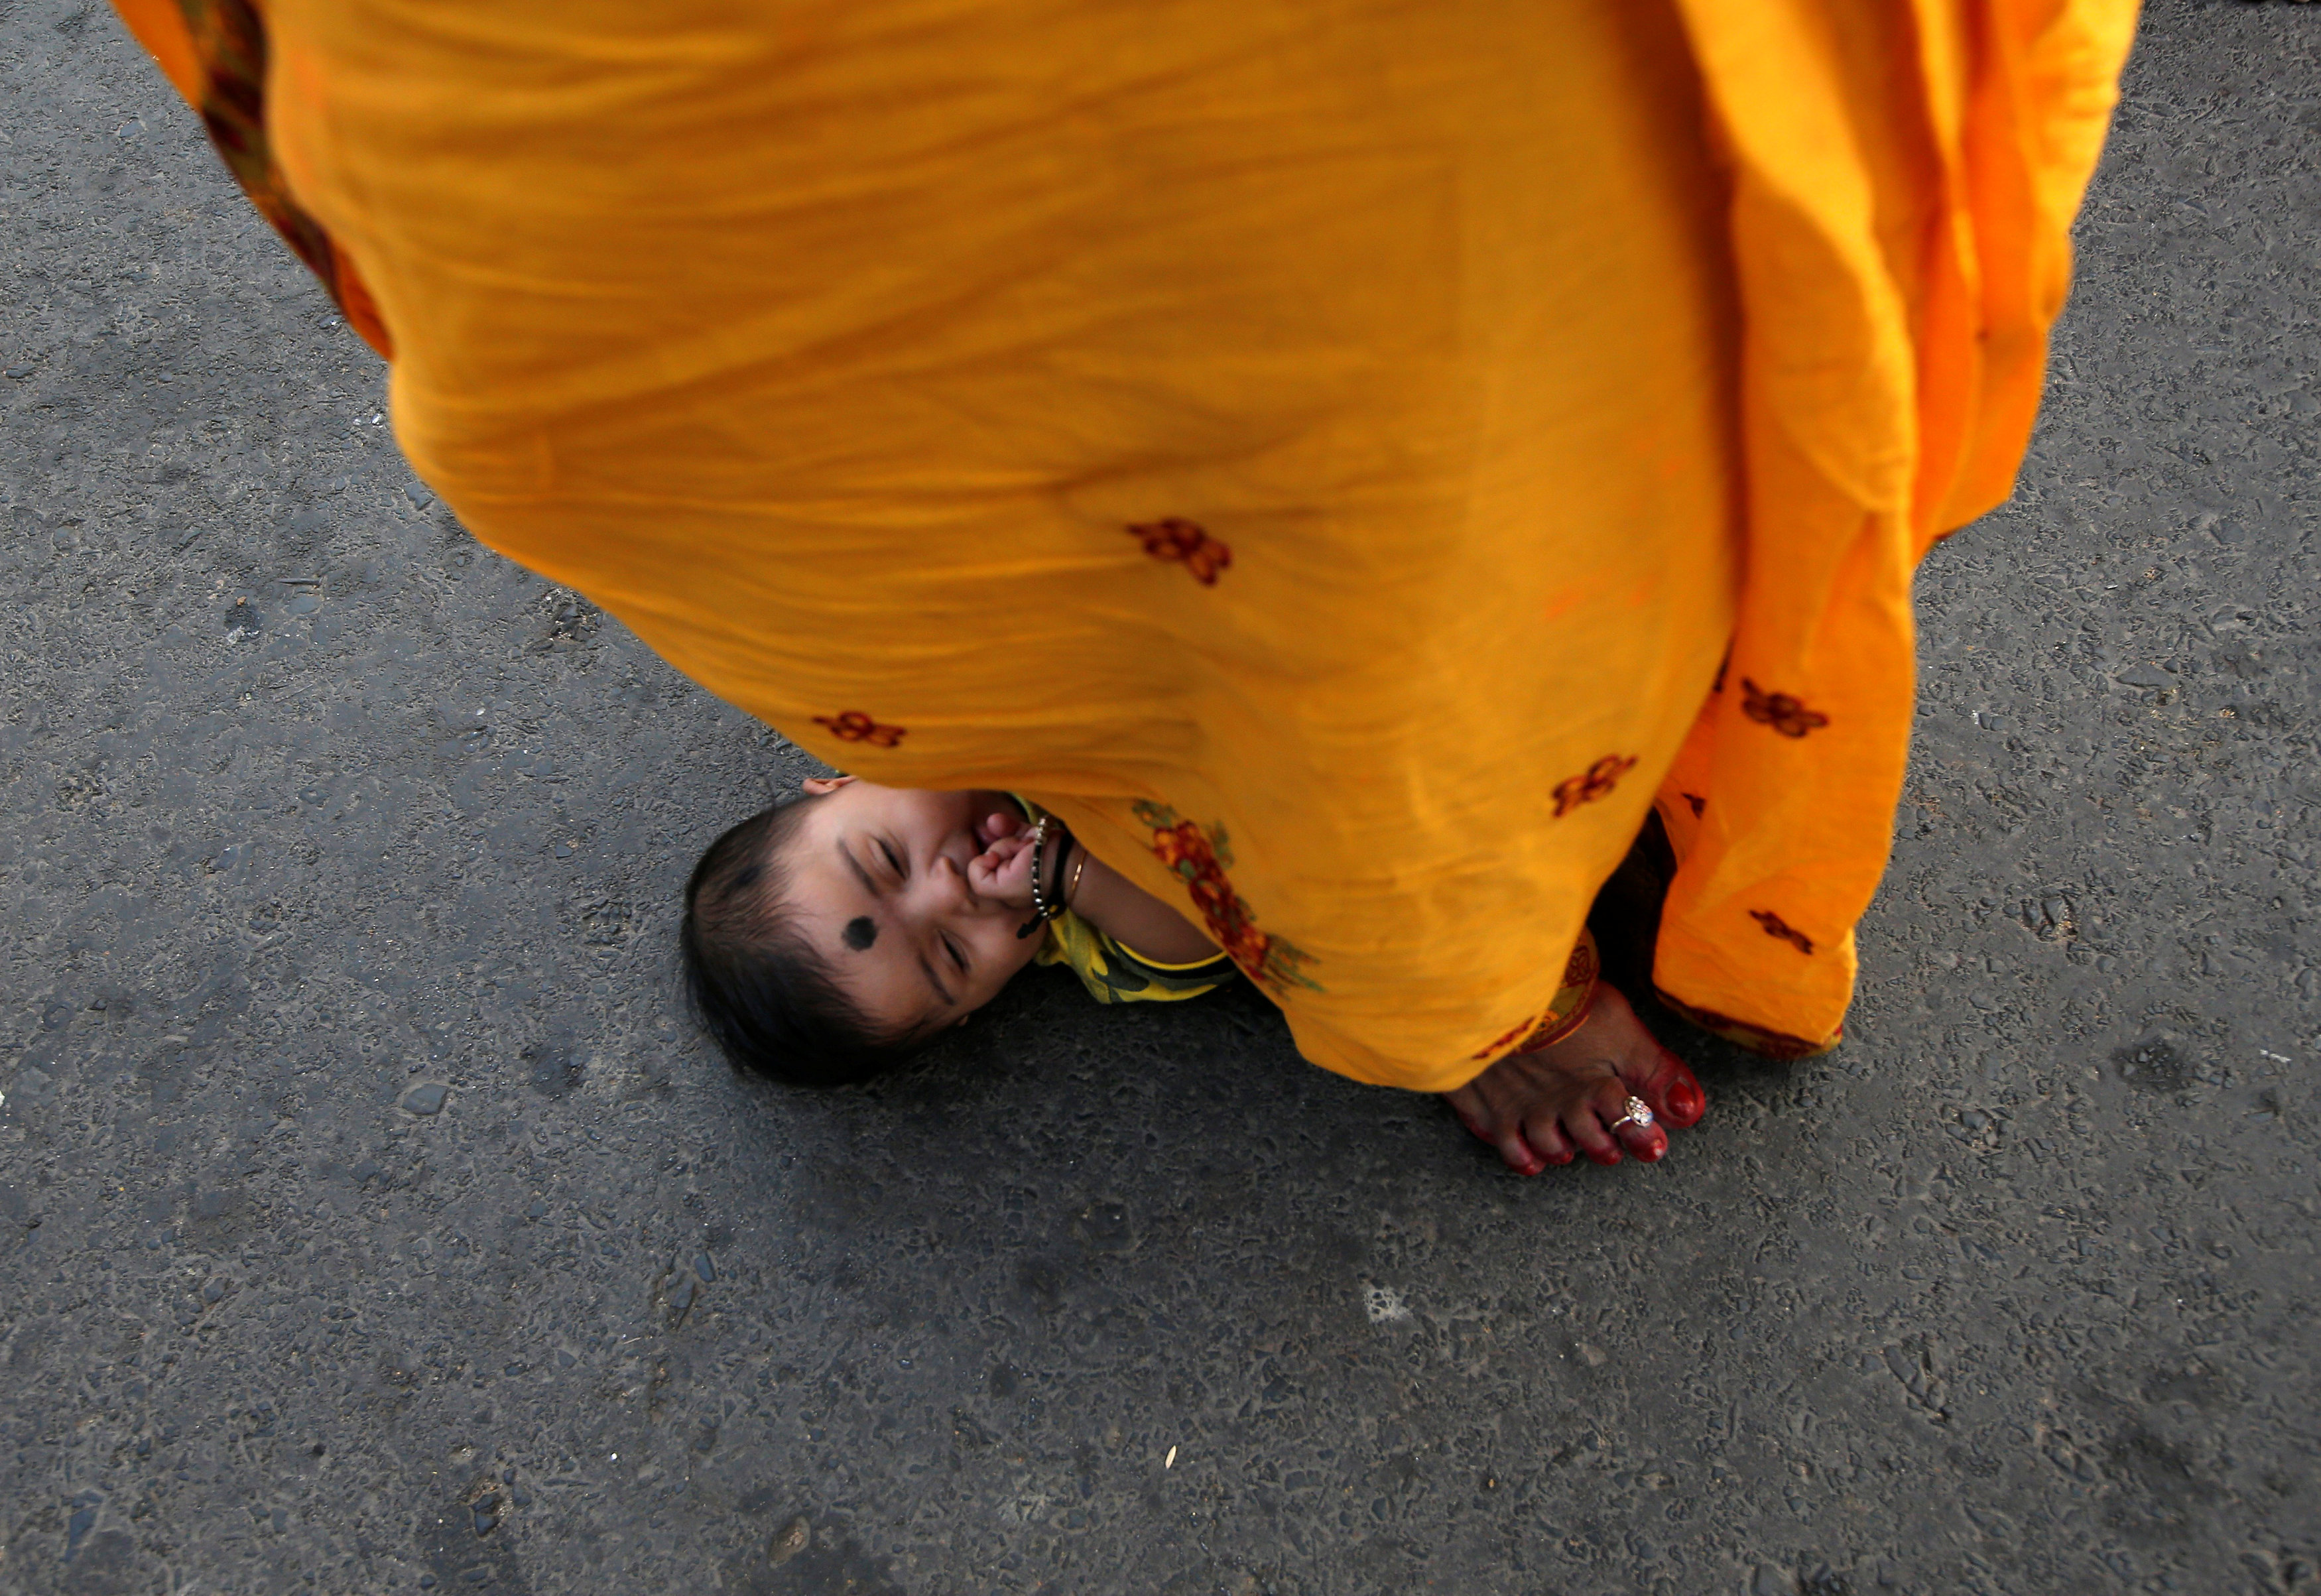 امرأة هندية تقف فوق طفل رضيع طلبا للبركة فى أحد طقوس العيد